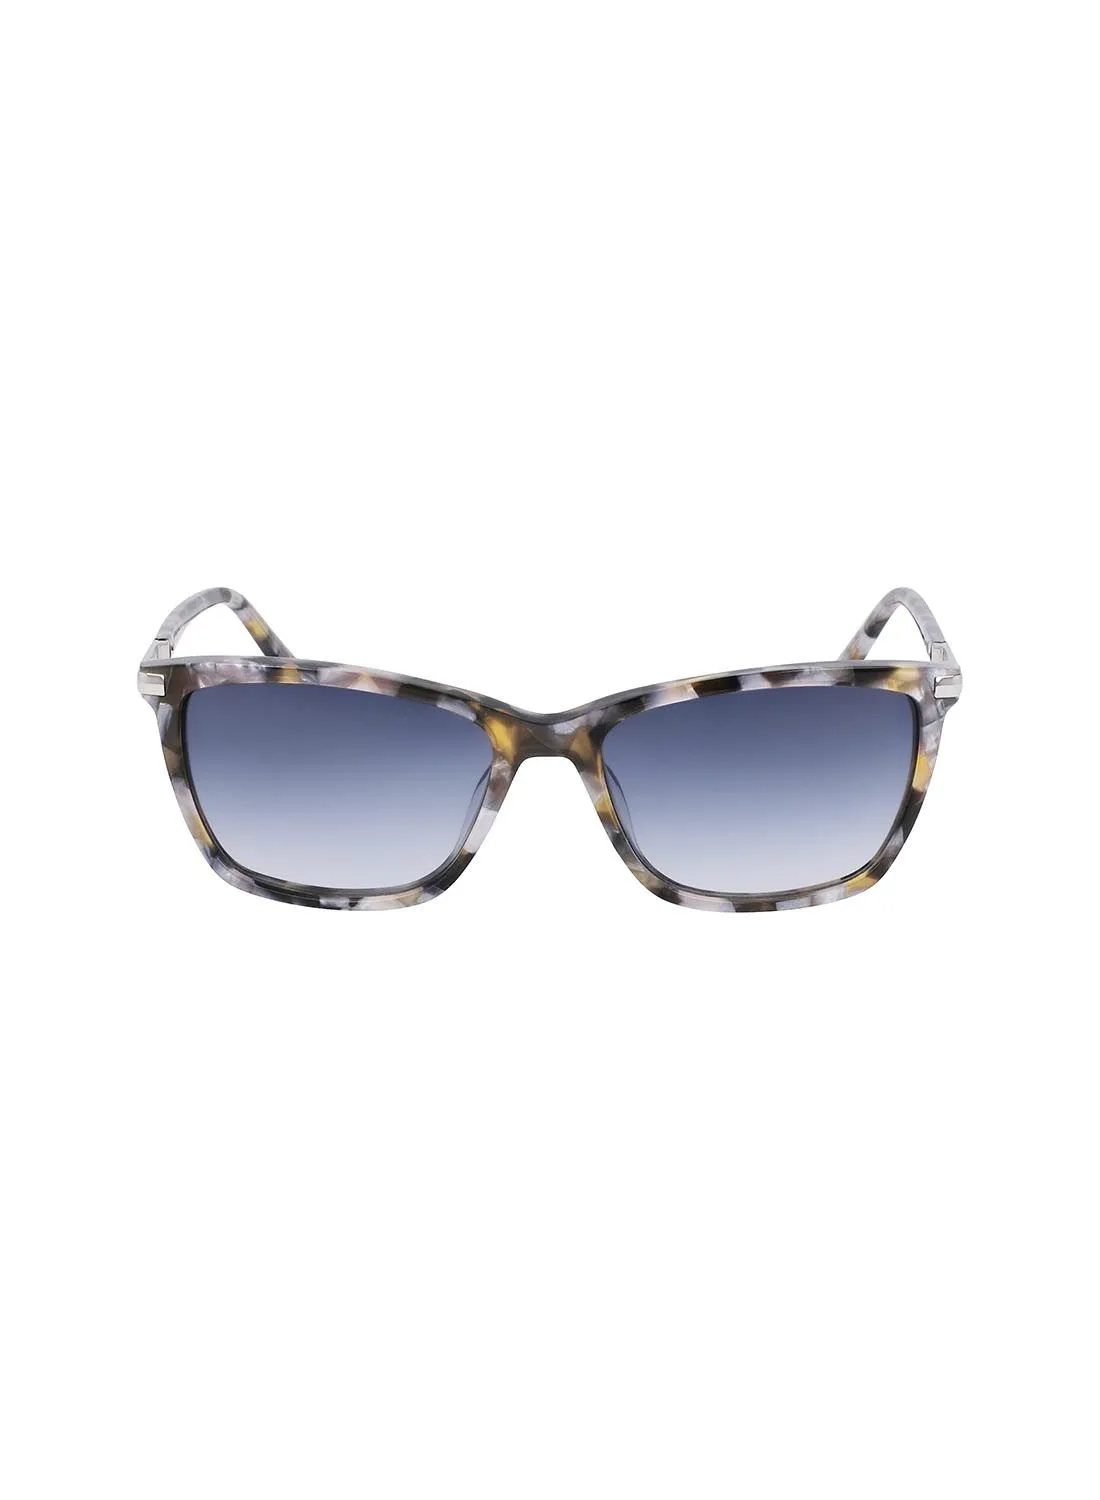 DKNY UV Rays Protection Eyewear Sunglasses DK539S-425-5516